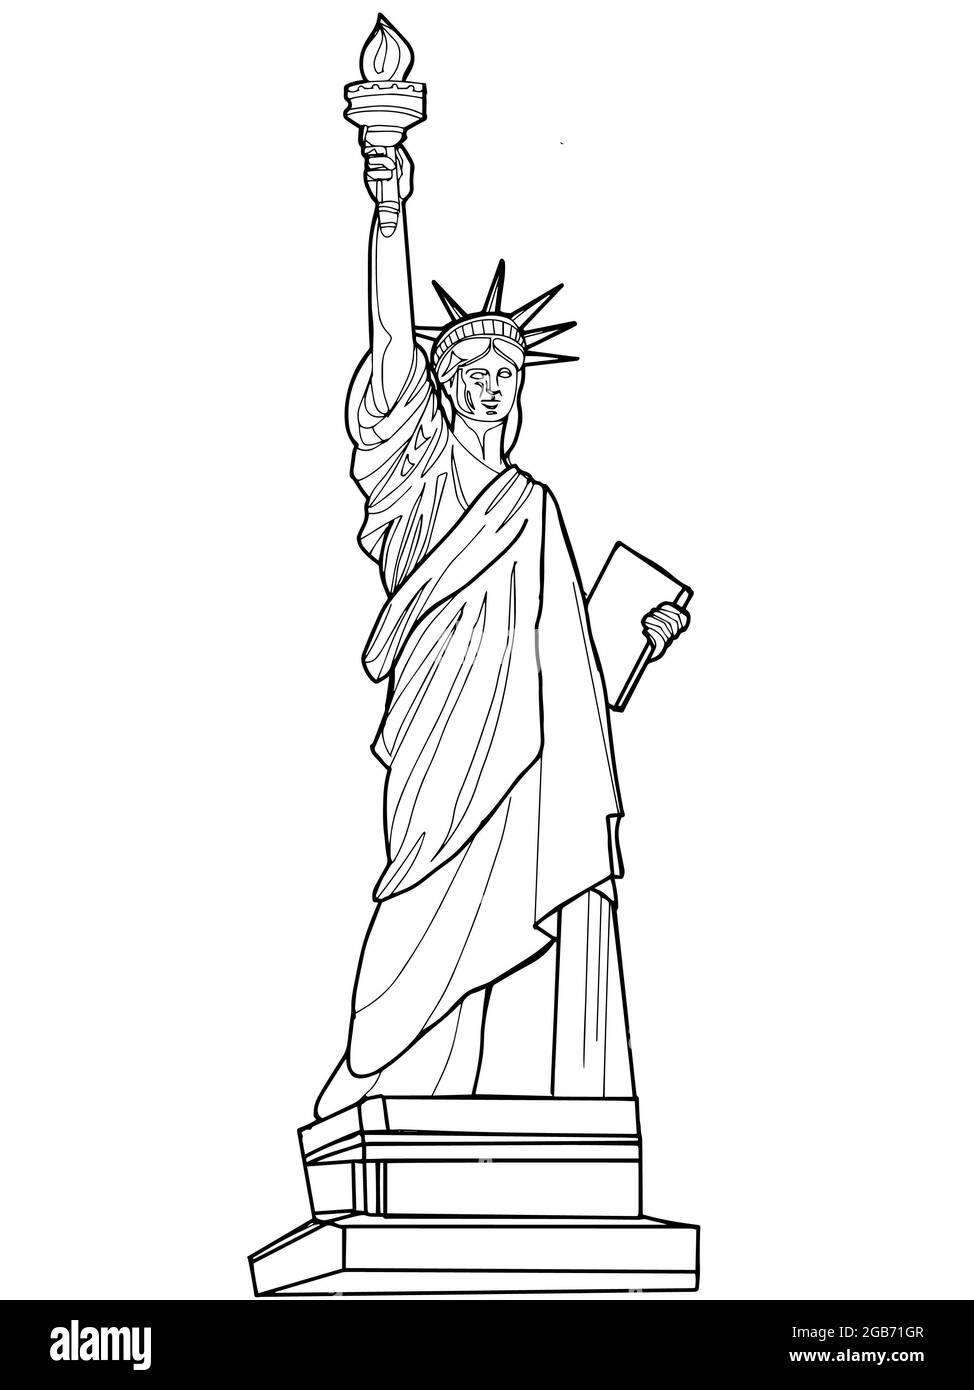 Le dessin de la Statue de la liberté sur fond blanc Banque D'Images